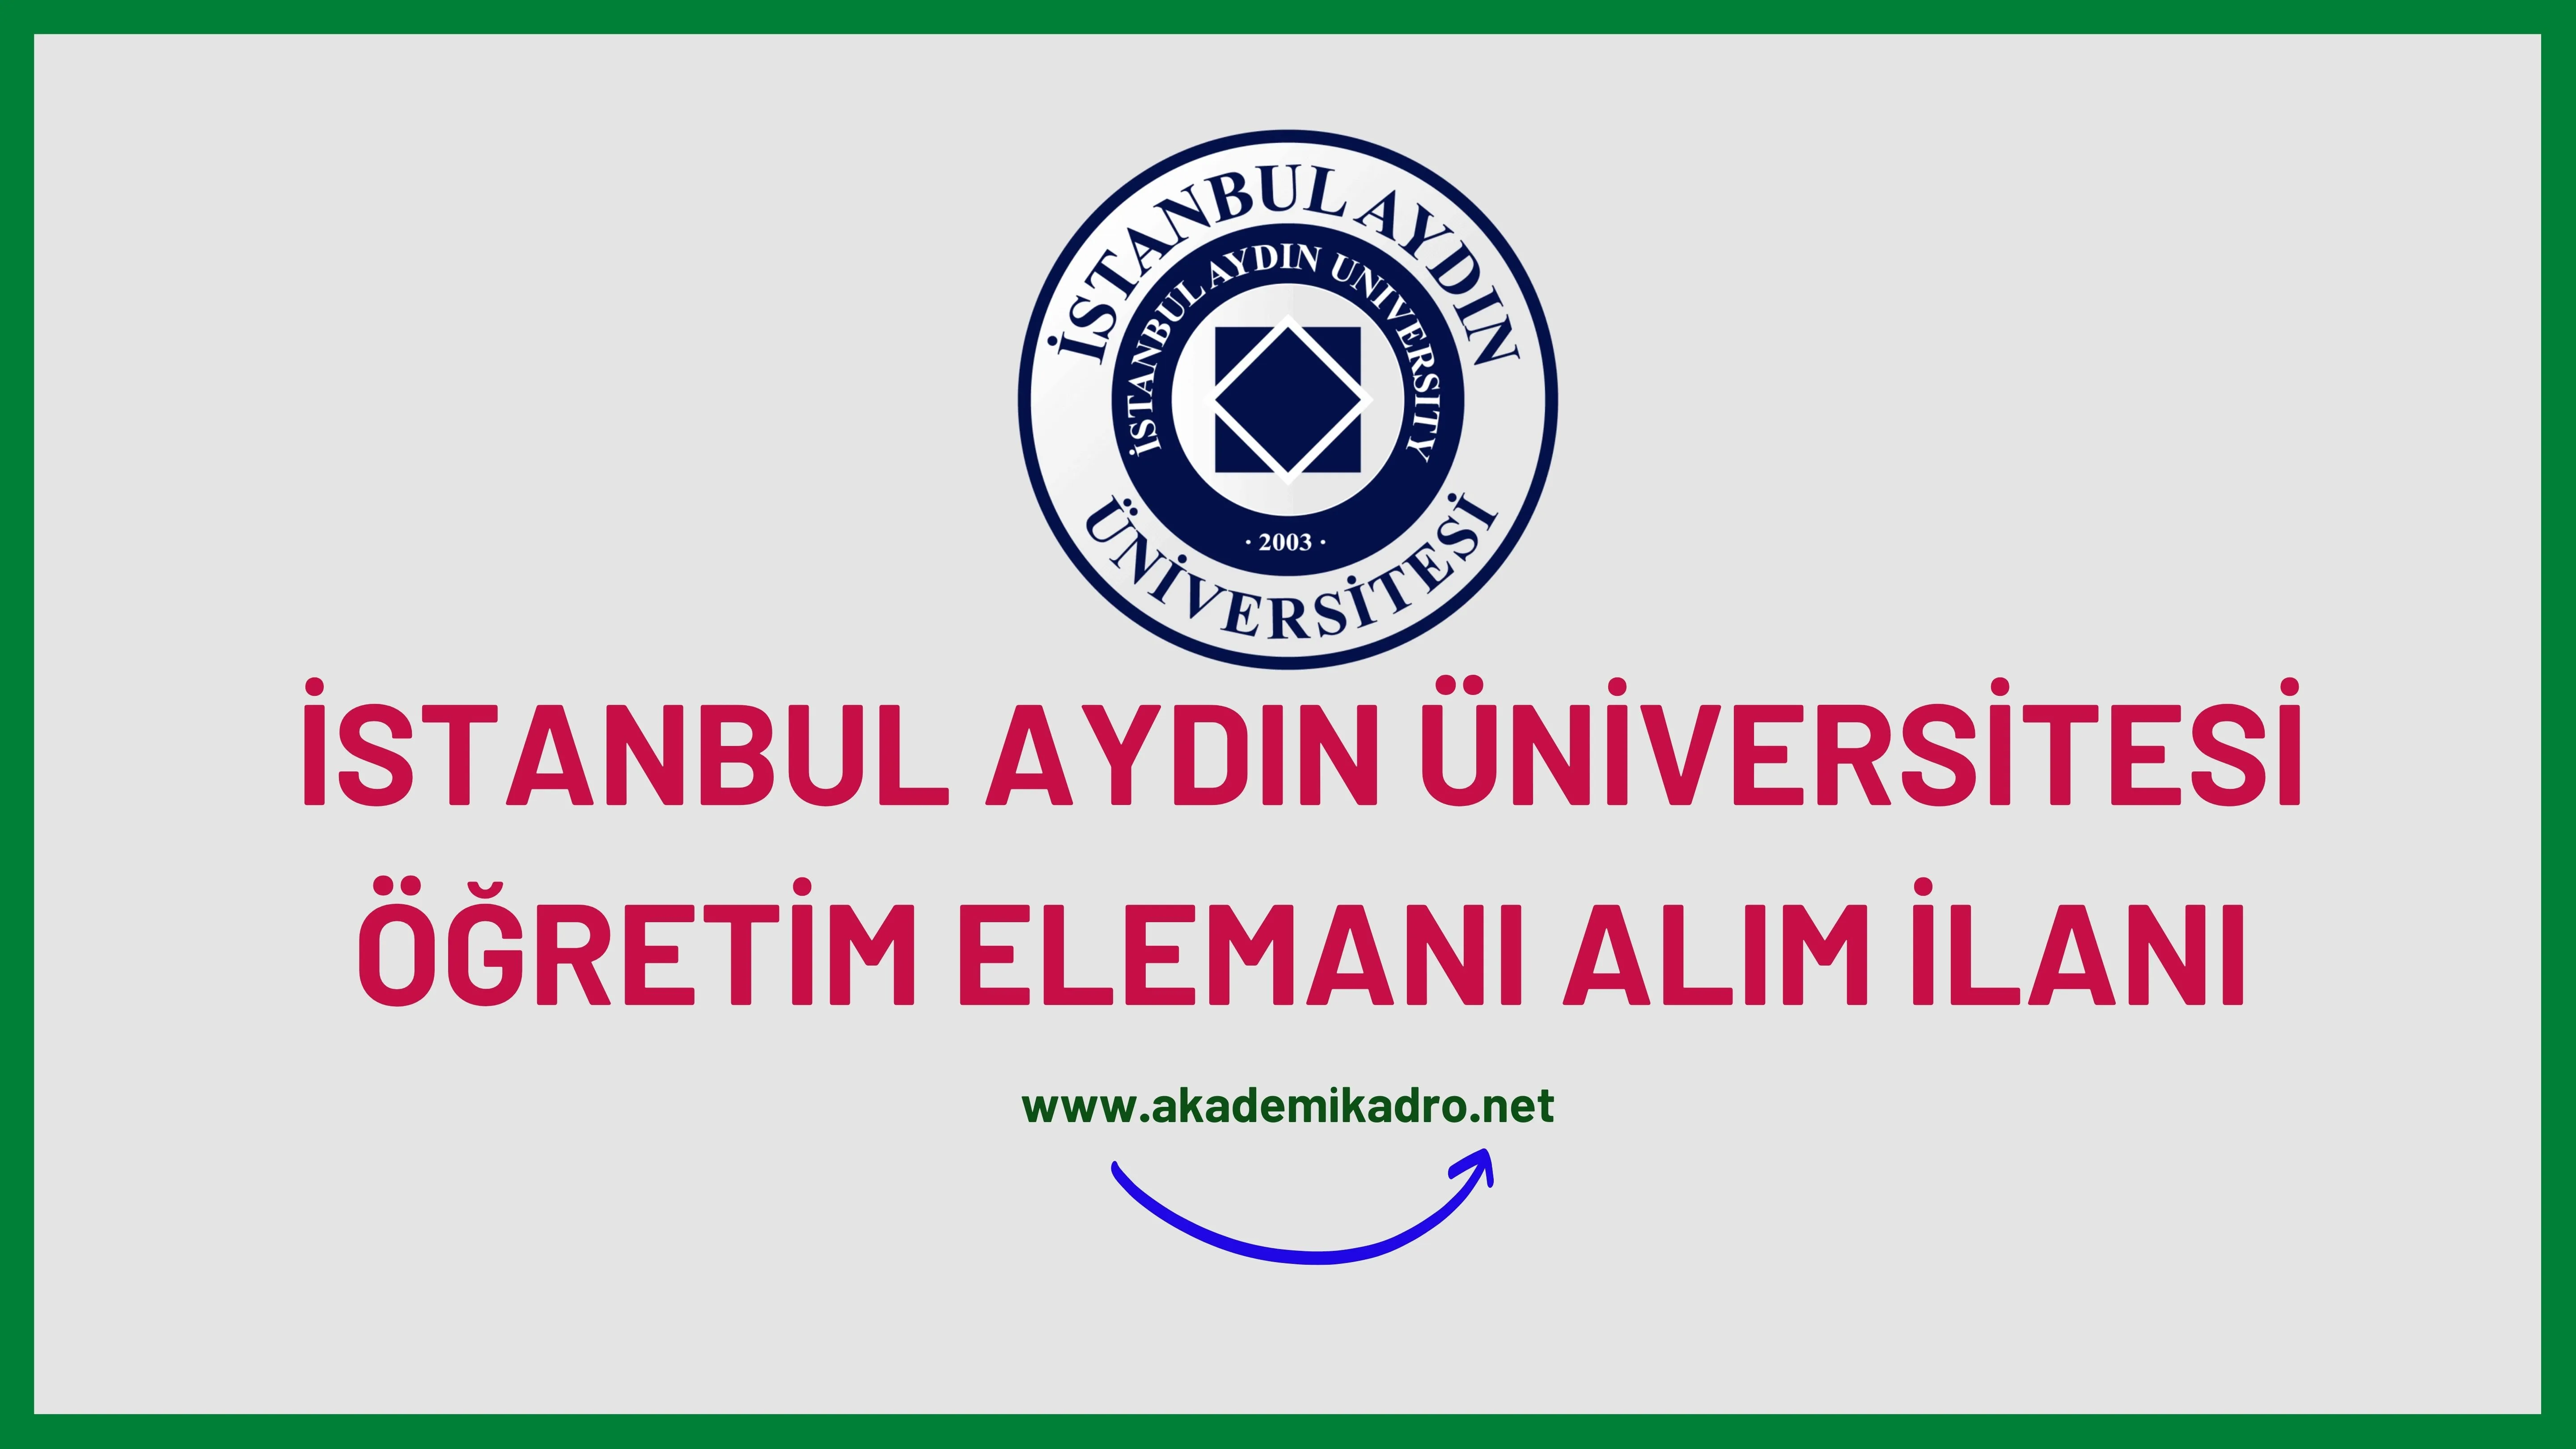 İstanbul Aydın Üniversitesi 38 Araştırma görevlisi, 14 Öğretim görevlisi ve 110 Öğretim üyesi alacak.